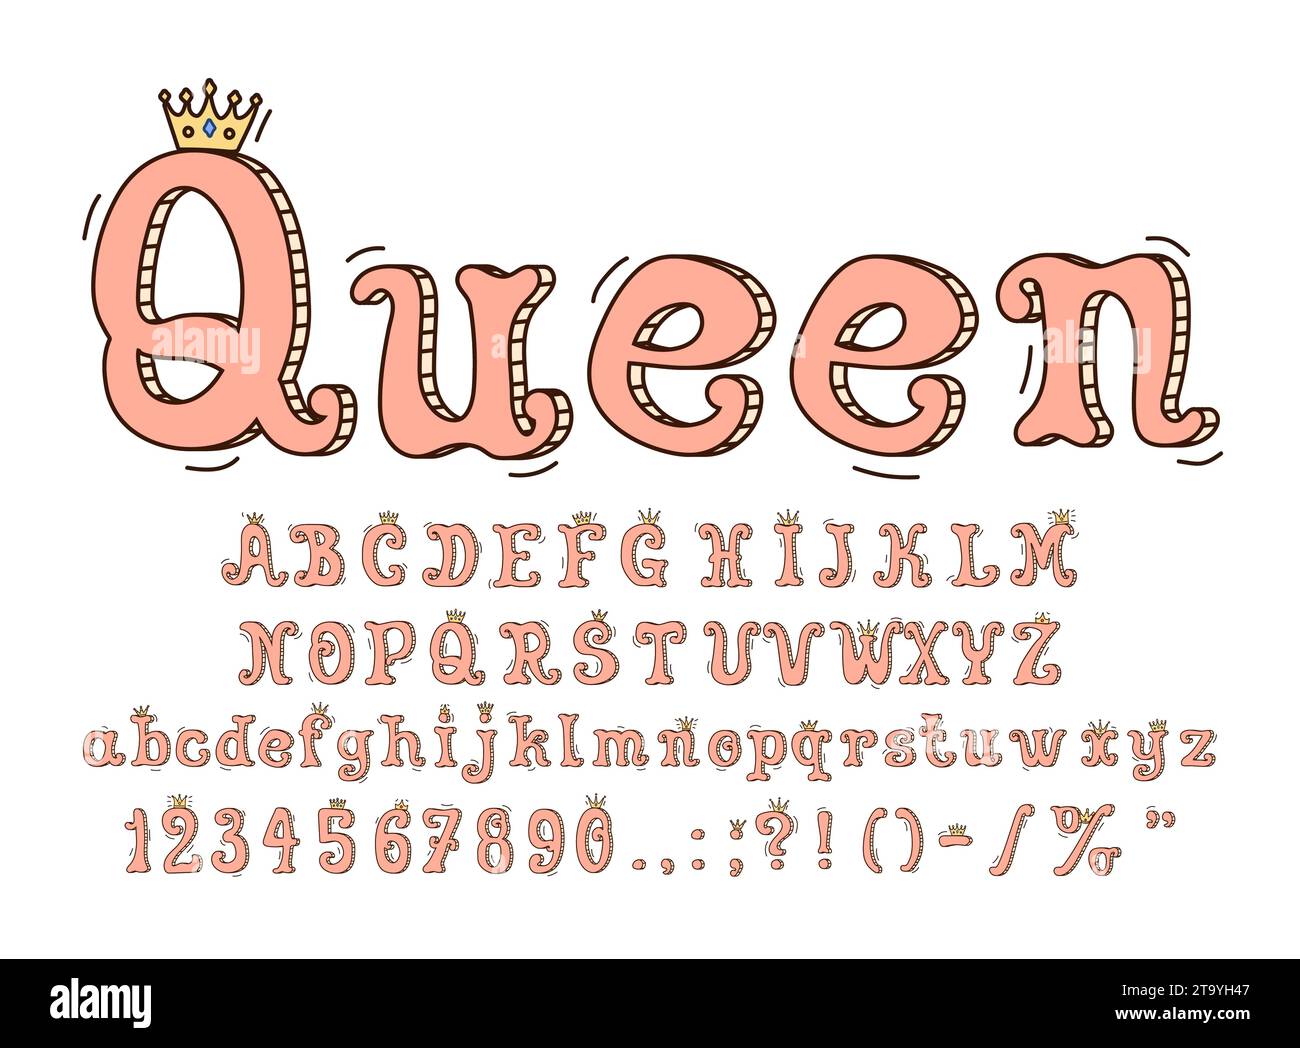 Queen-Schriftart, Prinzessin-Schriftart, königliche Schriftart, englisches Alphabet mit goldenen Kronen, verströmt königliche Eleganz mit verzierten, niedlichen rosa Zeichentrickbuchstaben. Anmutige, wirbelnde Charaktere vermitteln ein Gefühl der Verzauberung Stock Vektor